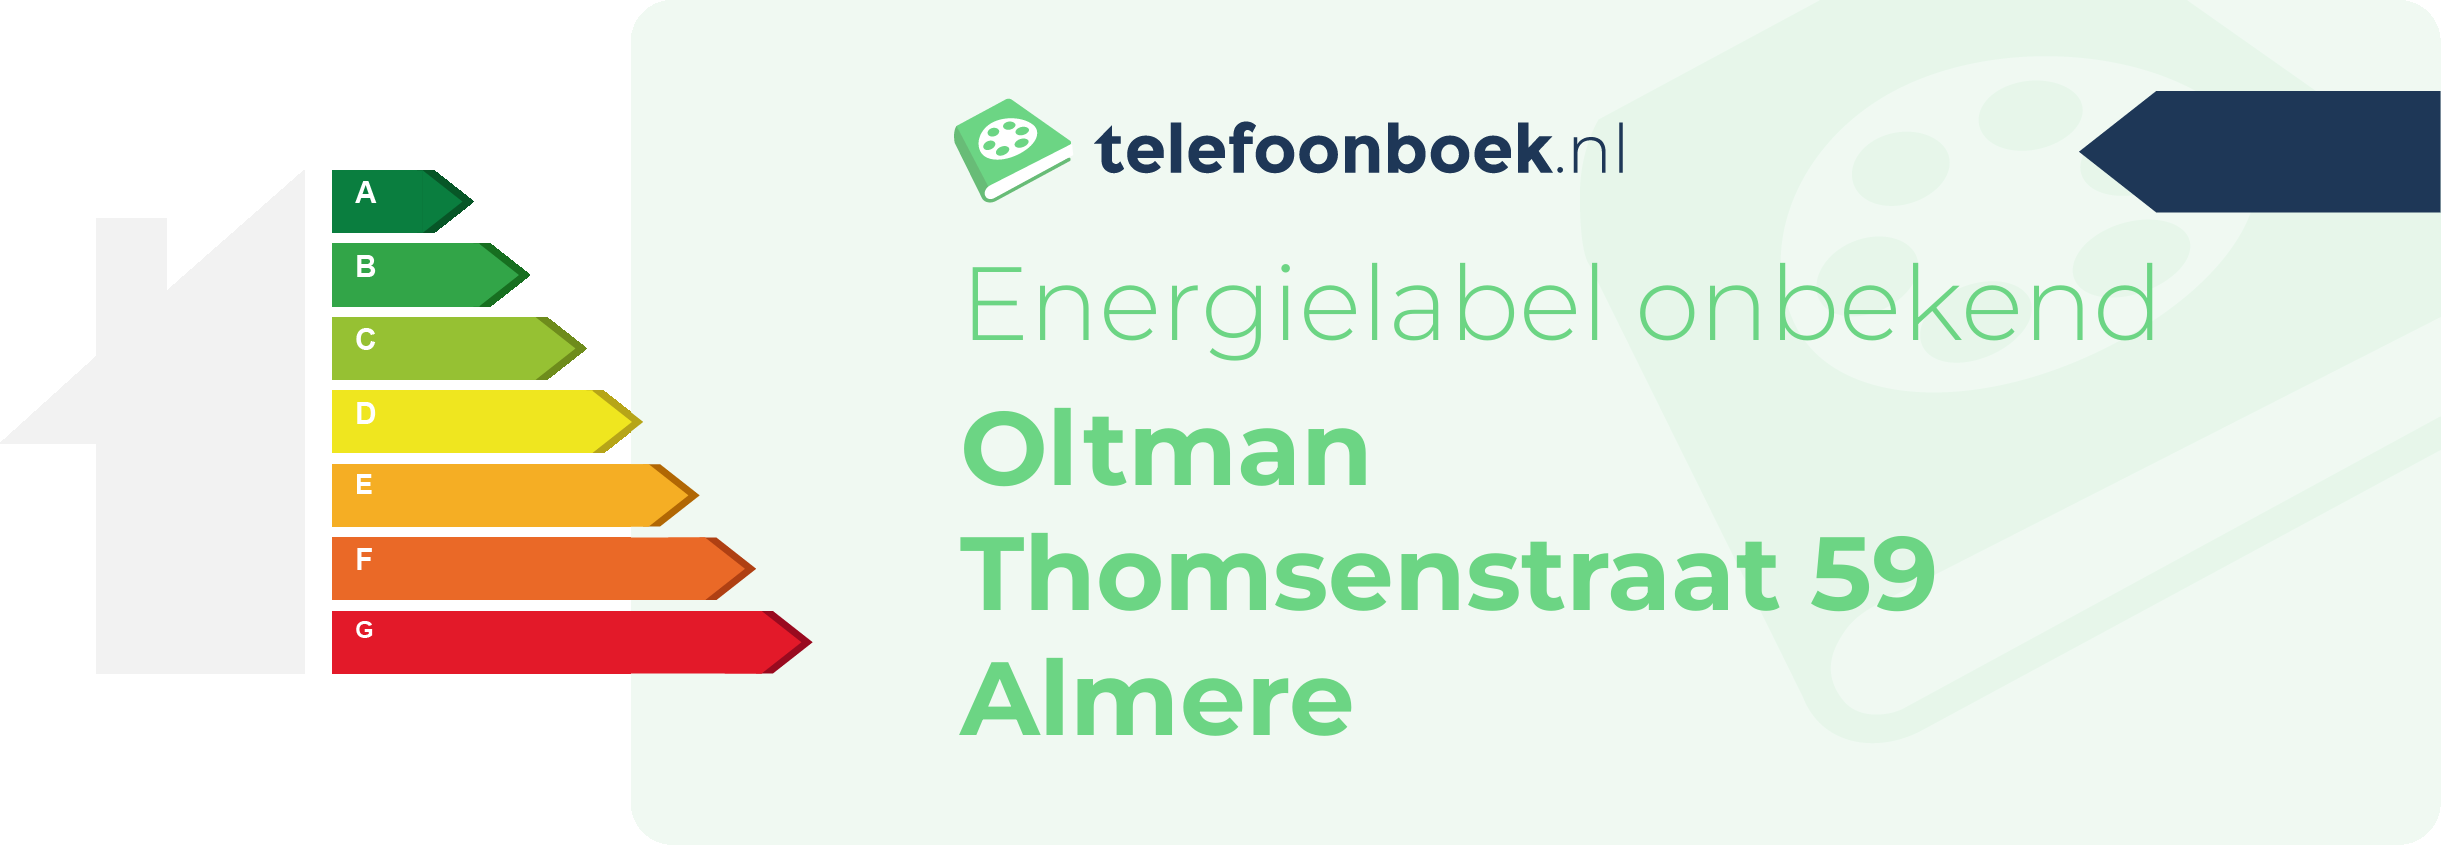 Energielabel Oltman Thomsenstraat 59 Almere